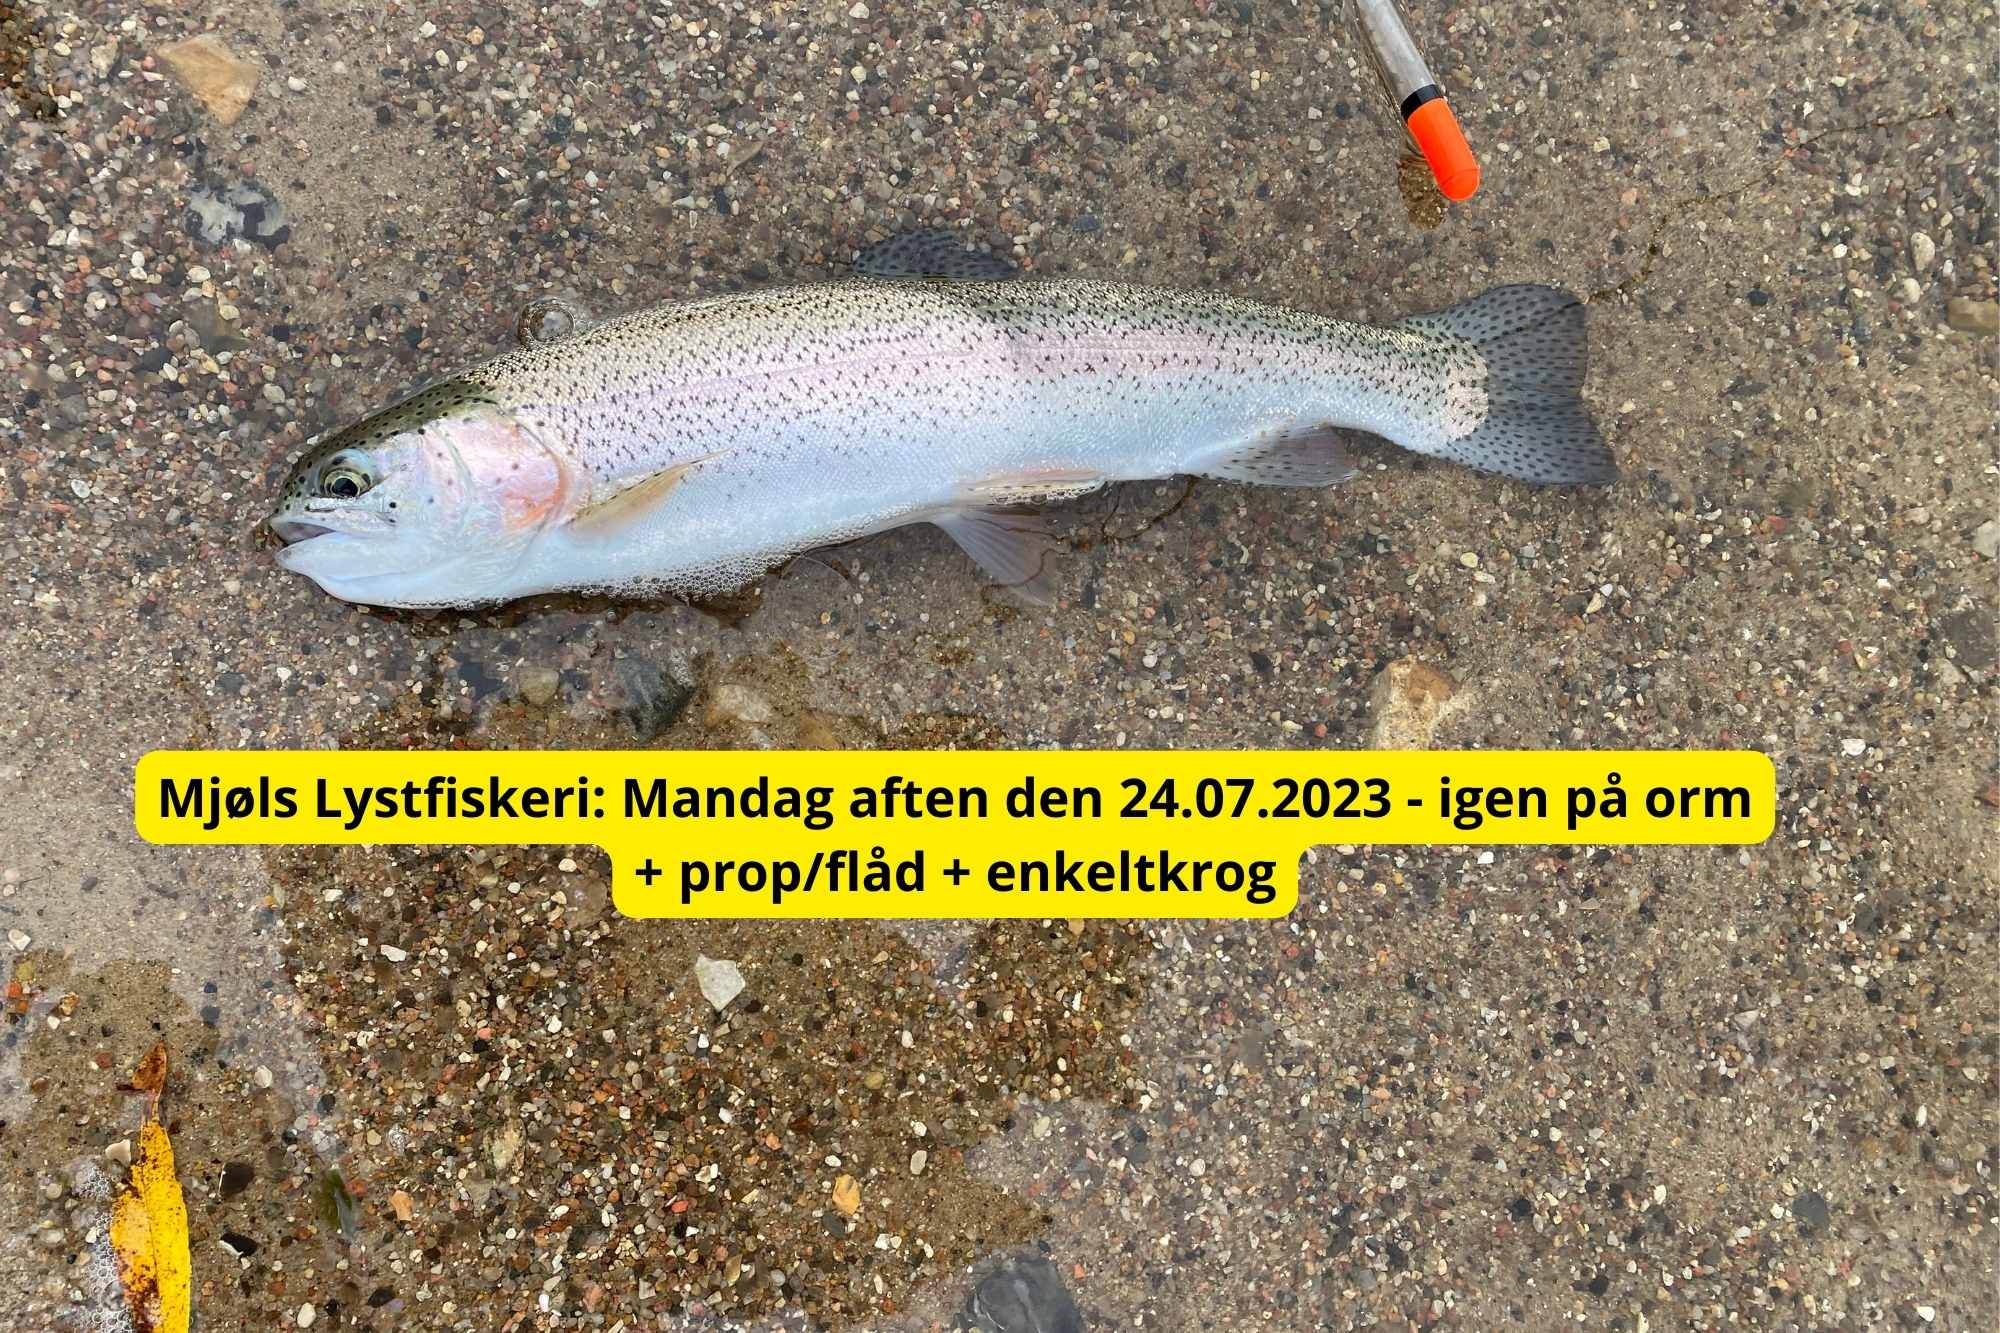 SE VIDEO – Mjøls Lystfiskeri Rødekro: – De hugger igen på orm